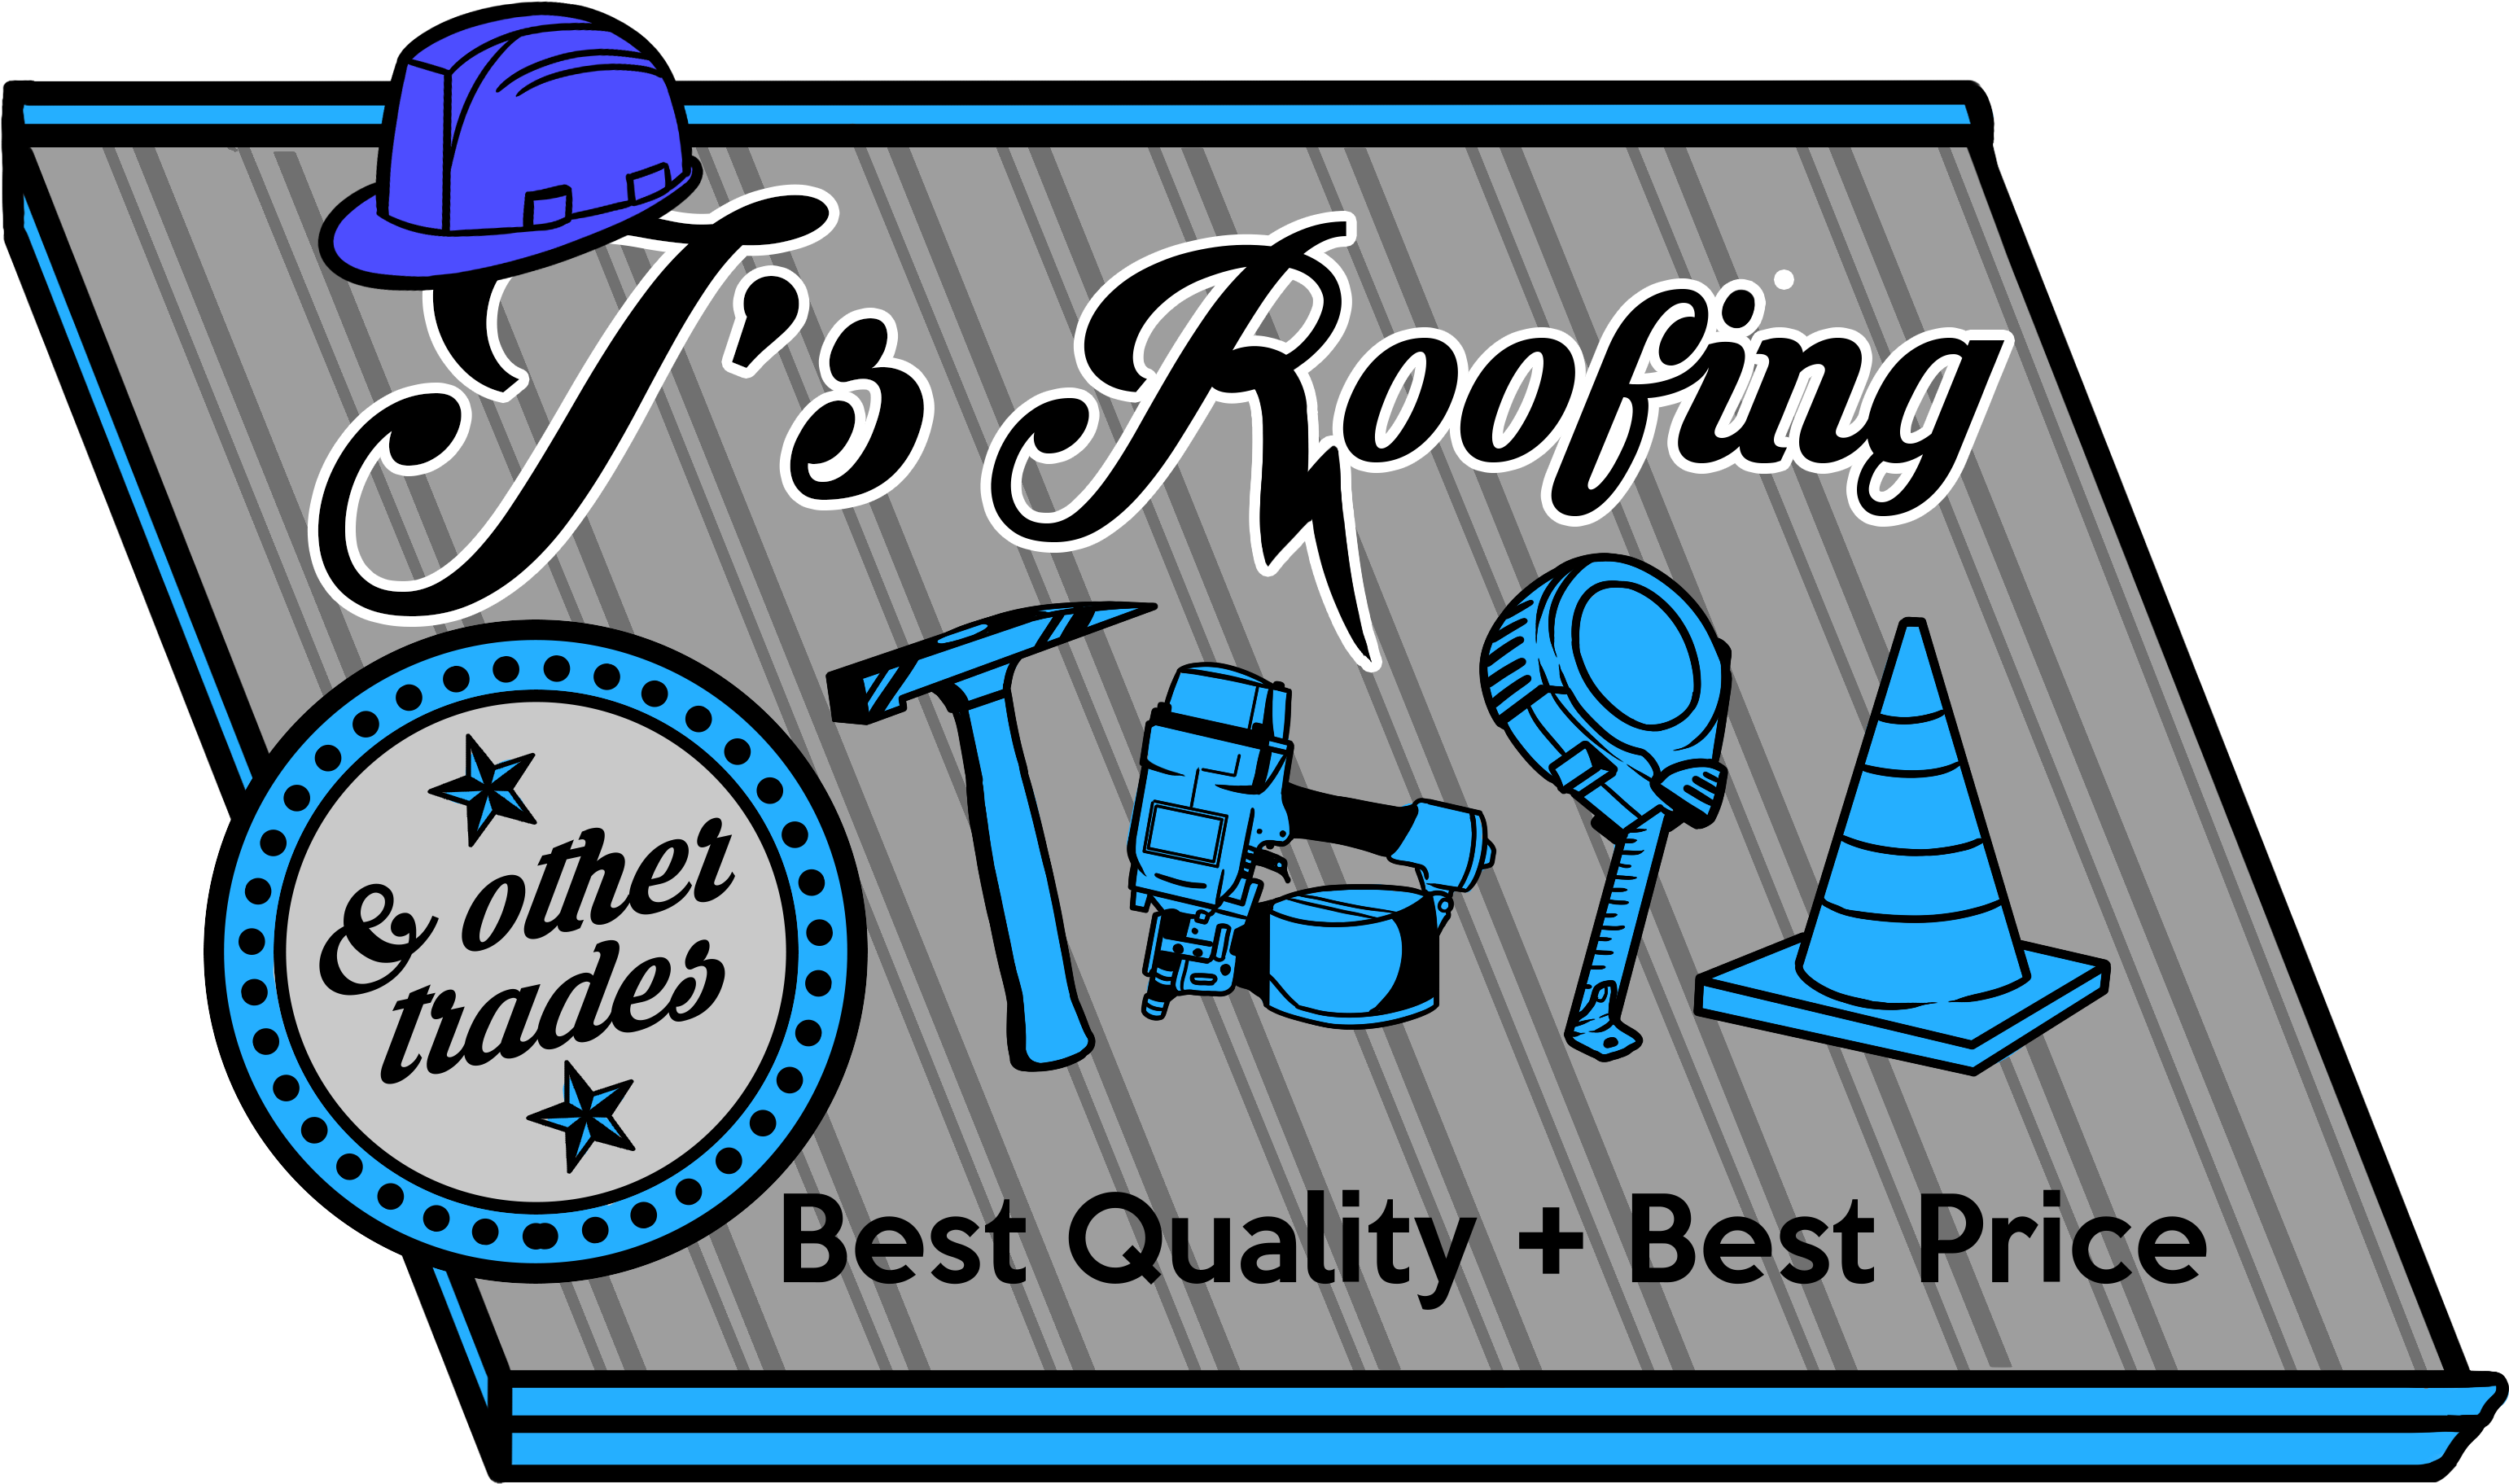 J's Roofing & Other Trades - J's Roofing & Other Trades (3507x2480)